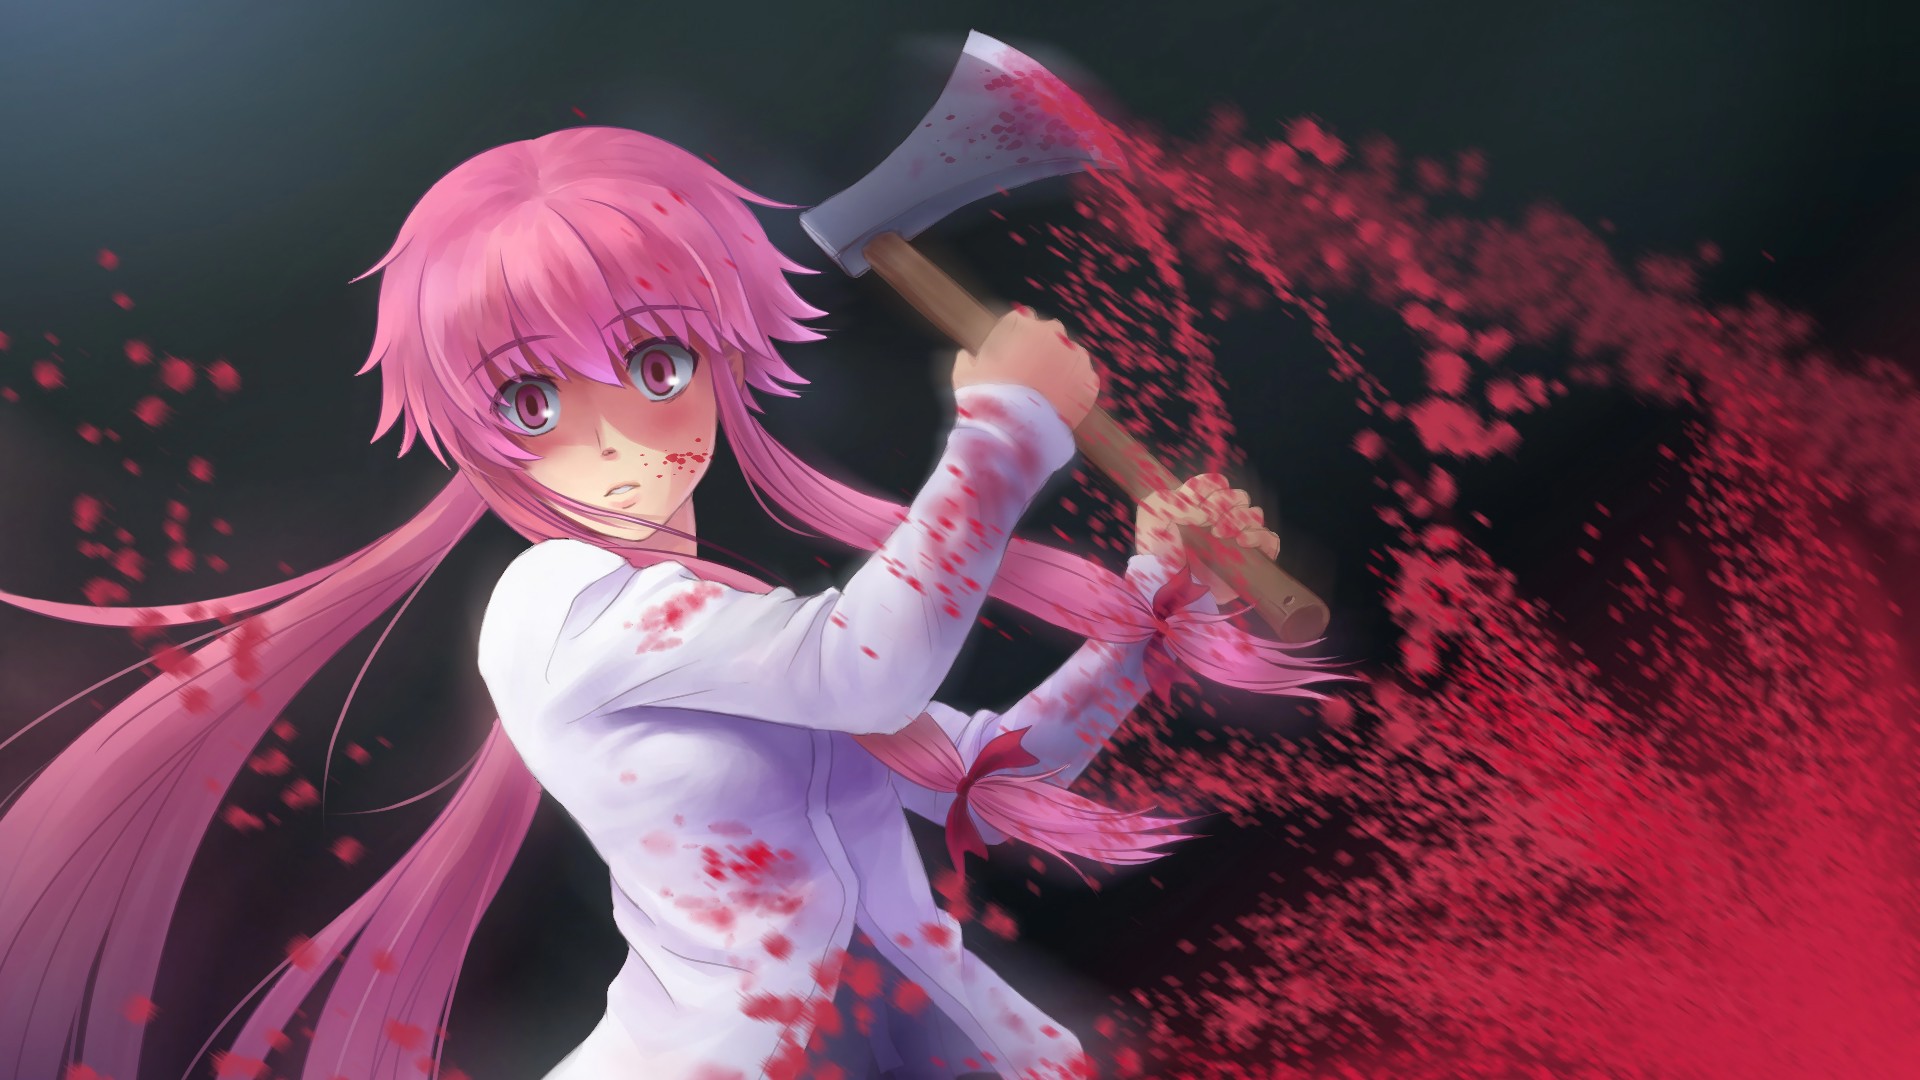 Anime 1920x1080 axes blood pink hair pink eyes anime girls anime long hair Gasai Yuno Mirai Nikki blood spatter